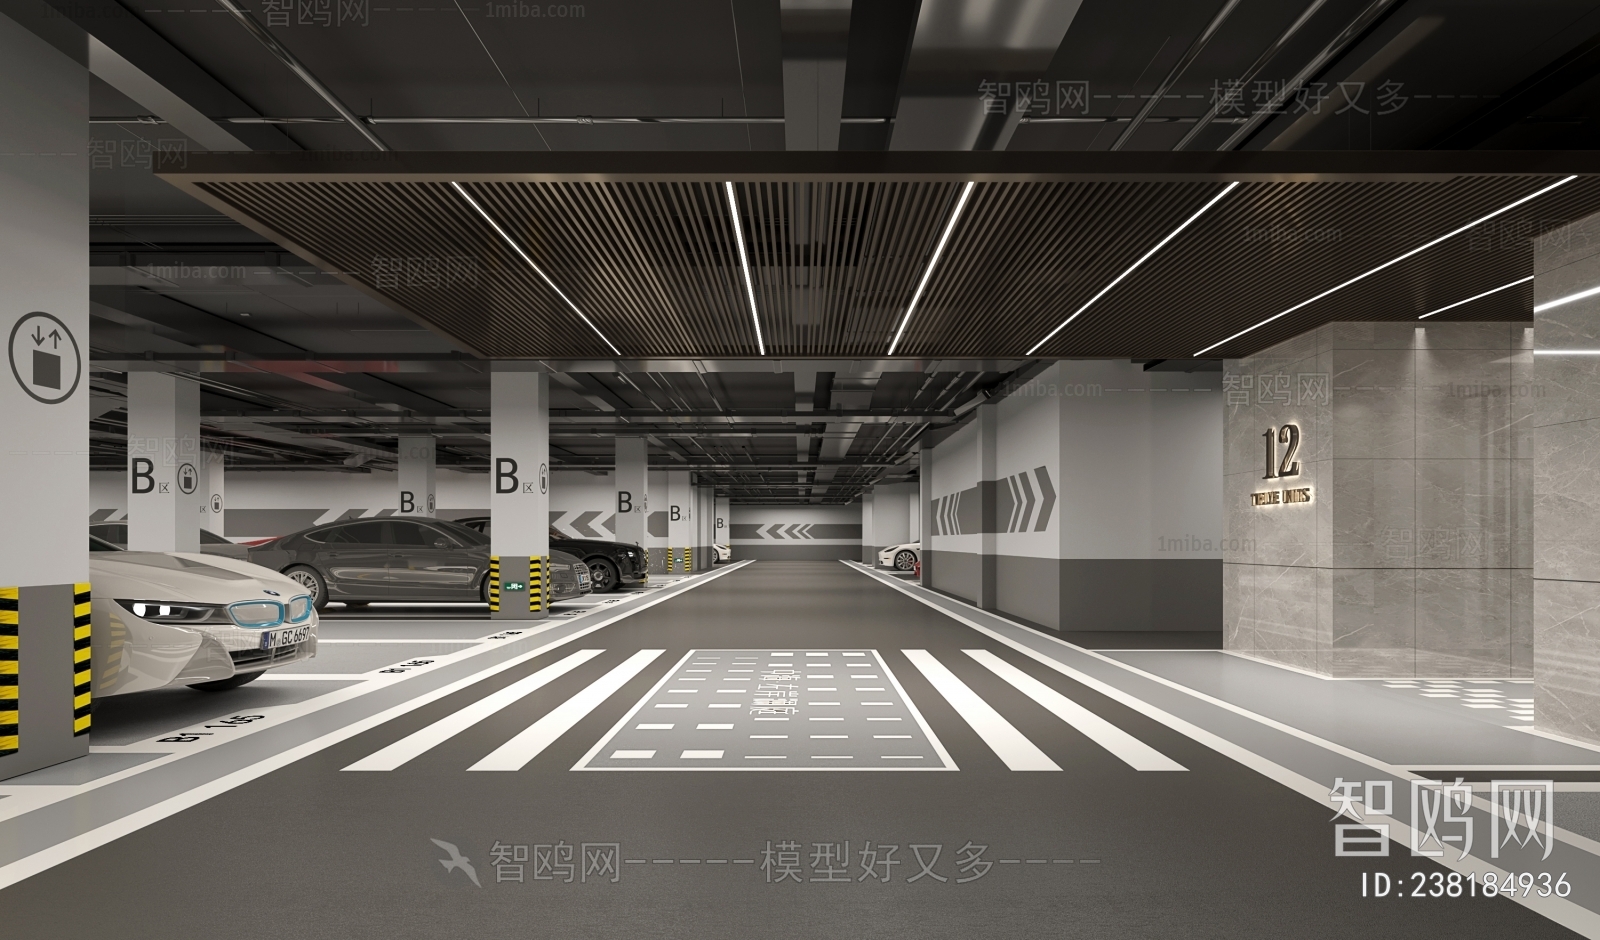 Modern Underground Parking Lot